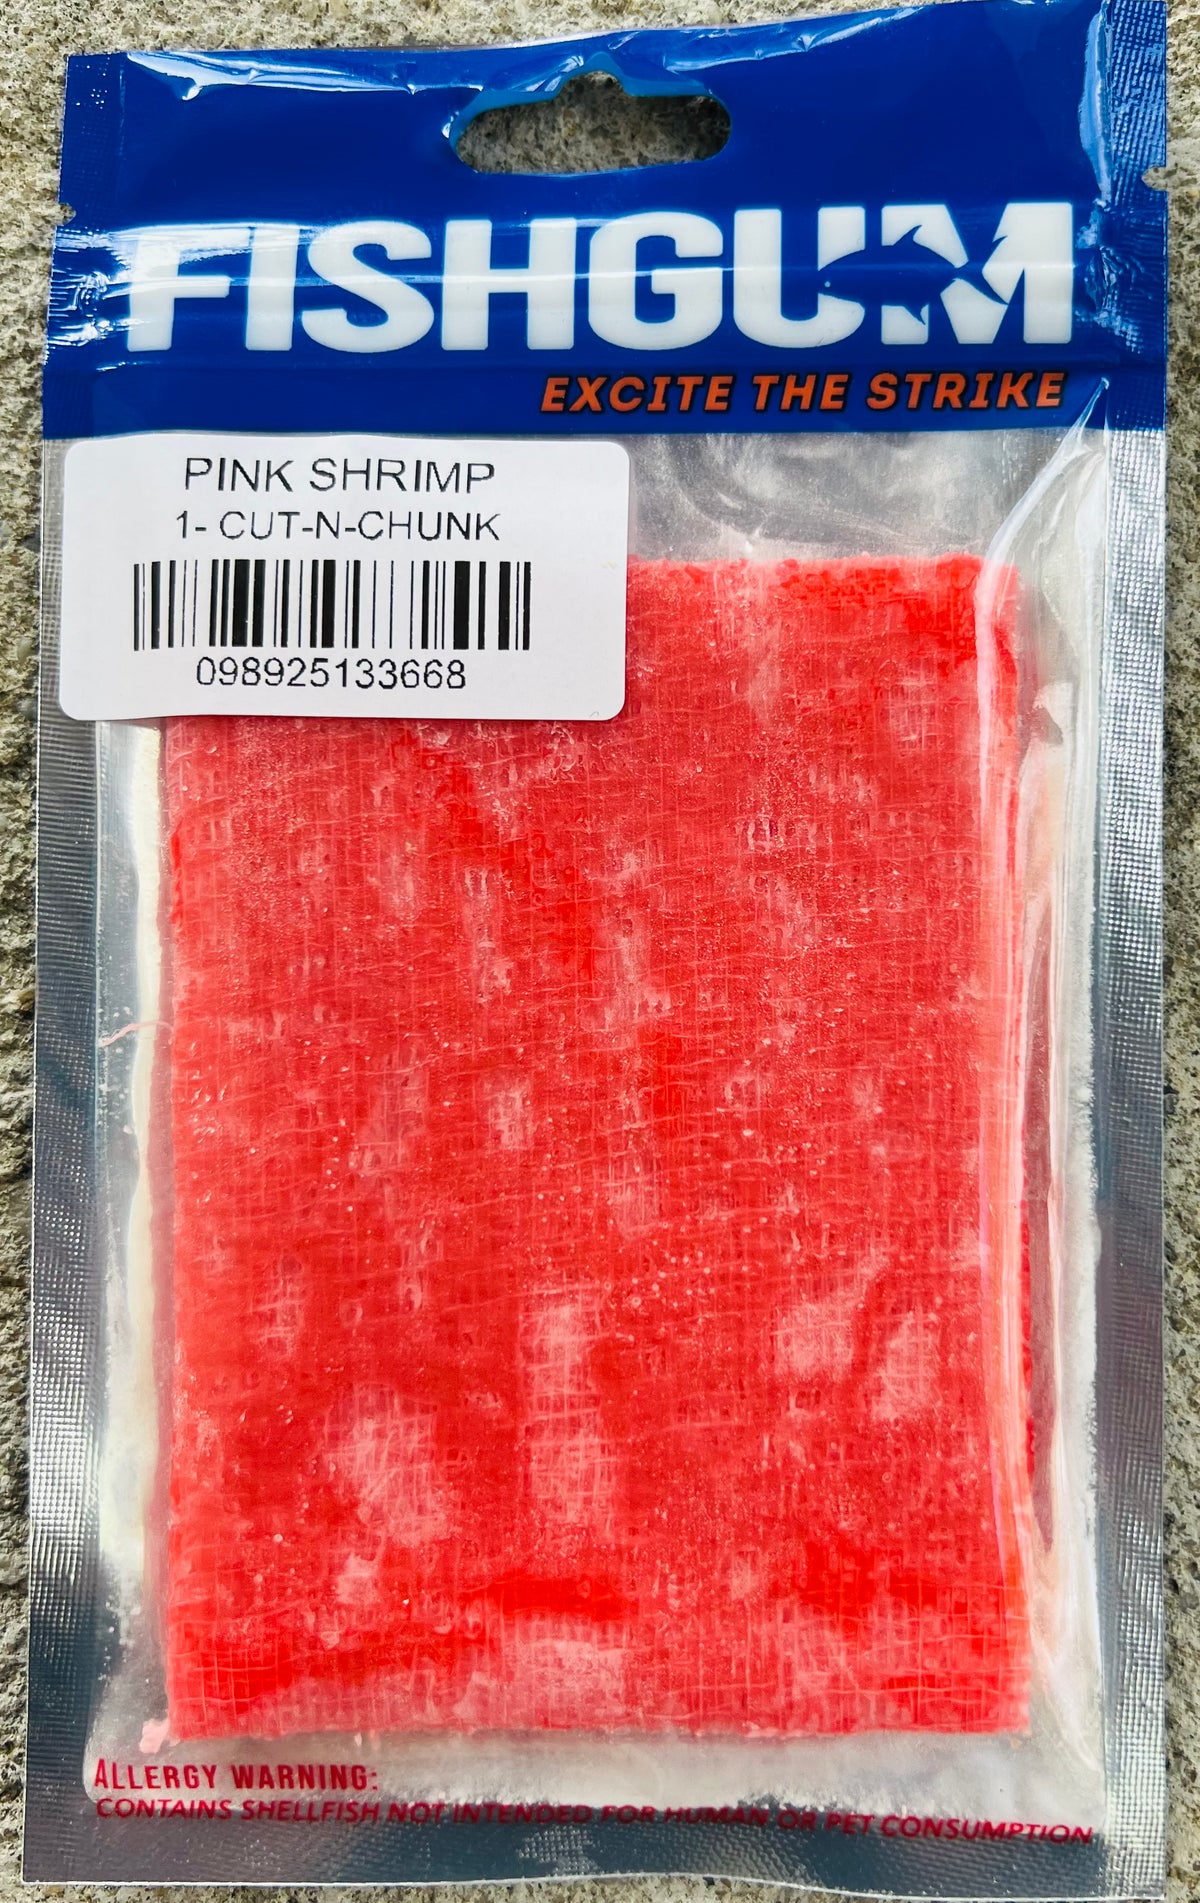 PINK SHRIMP